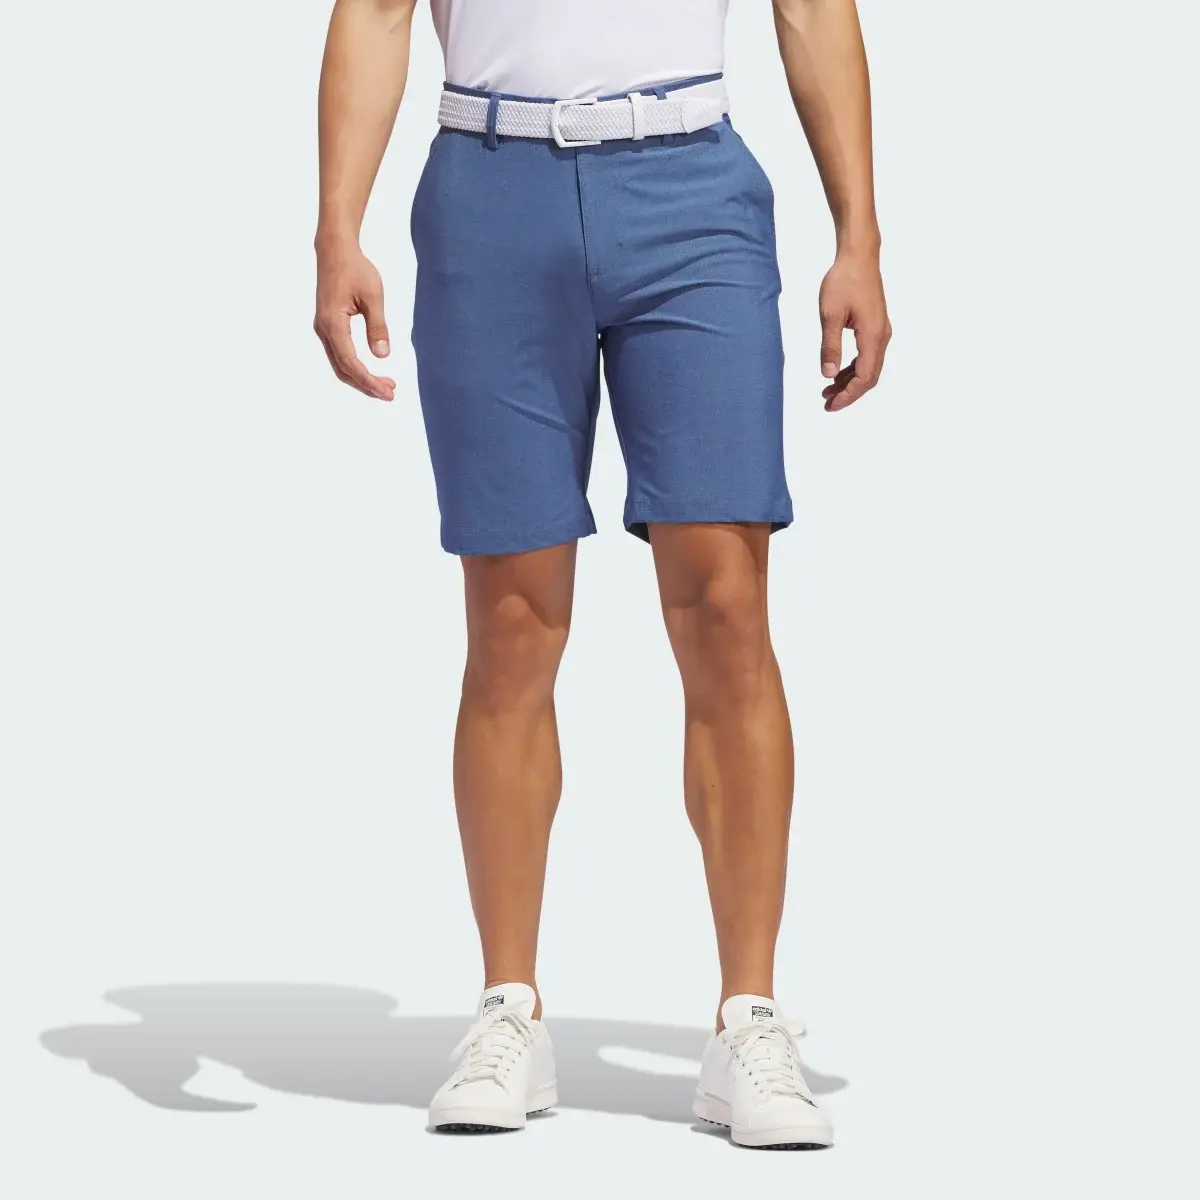 Adidas Ultimate365 Printed Shorts. 1